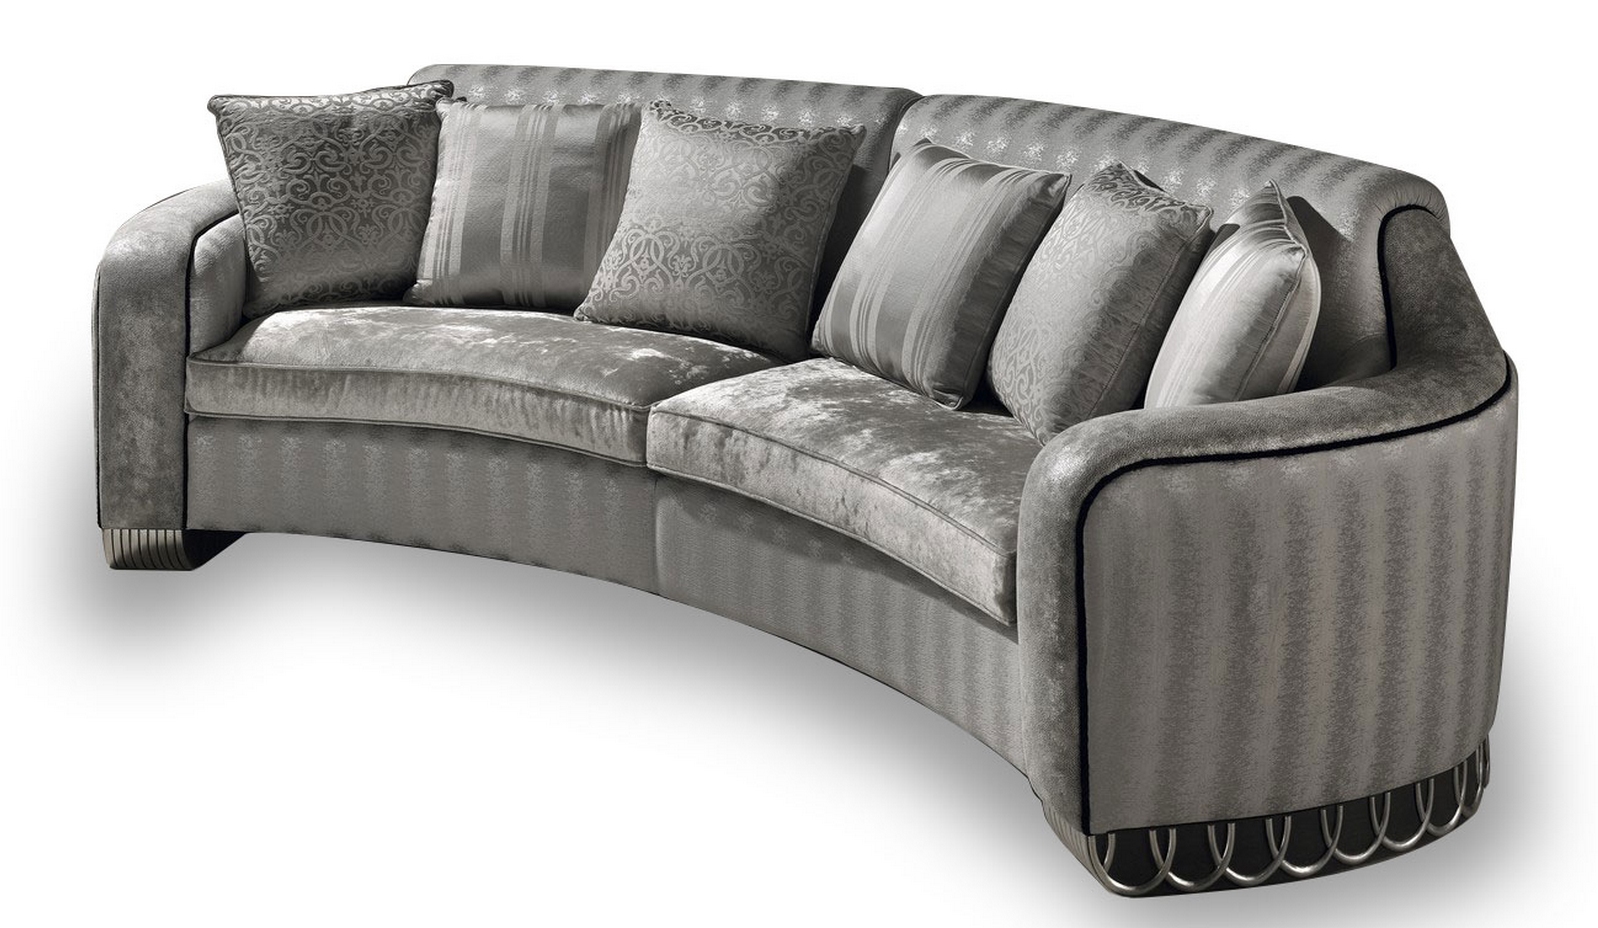 Baroque curved sofa 